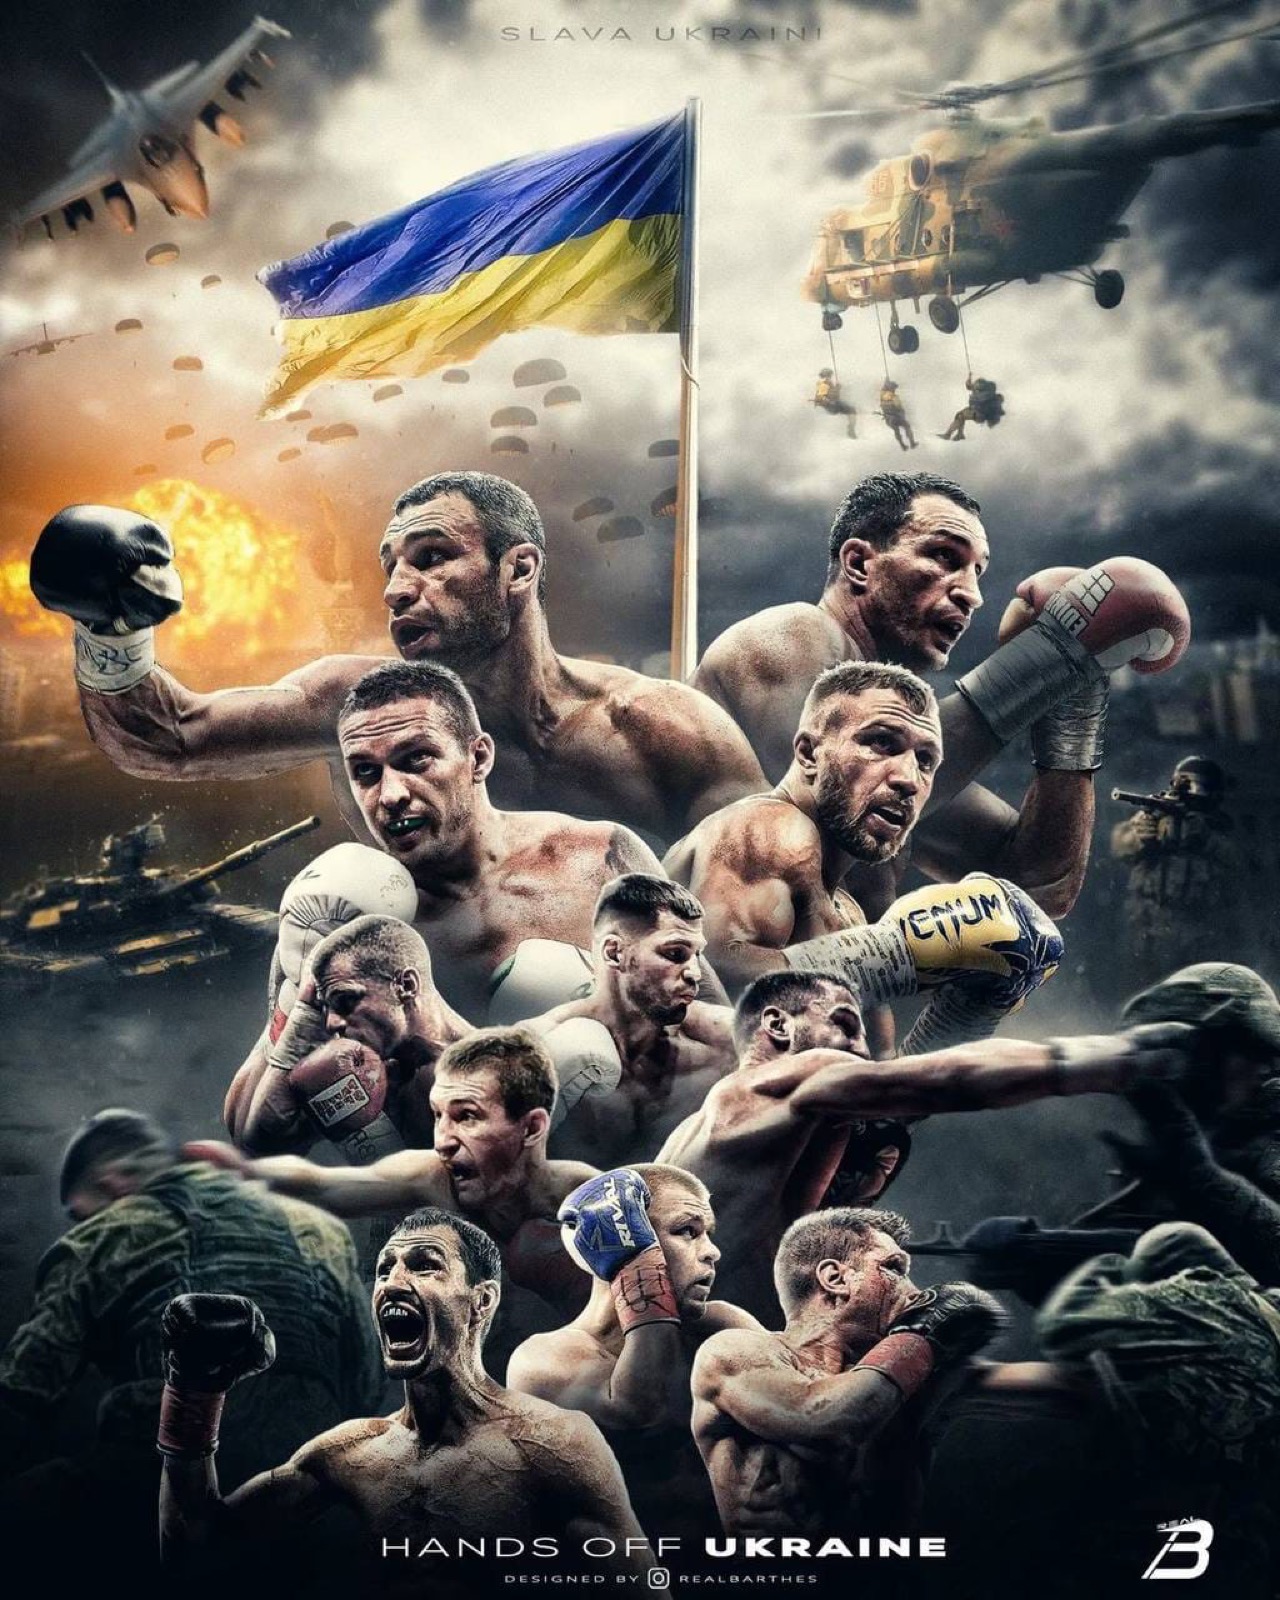 Vitali Klitschko boxing image / photo